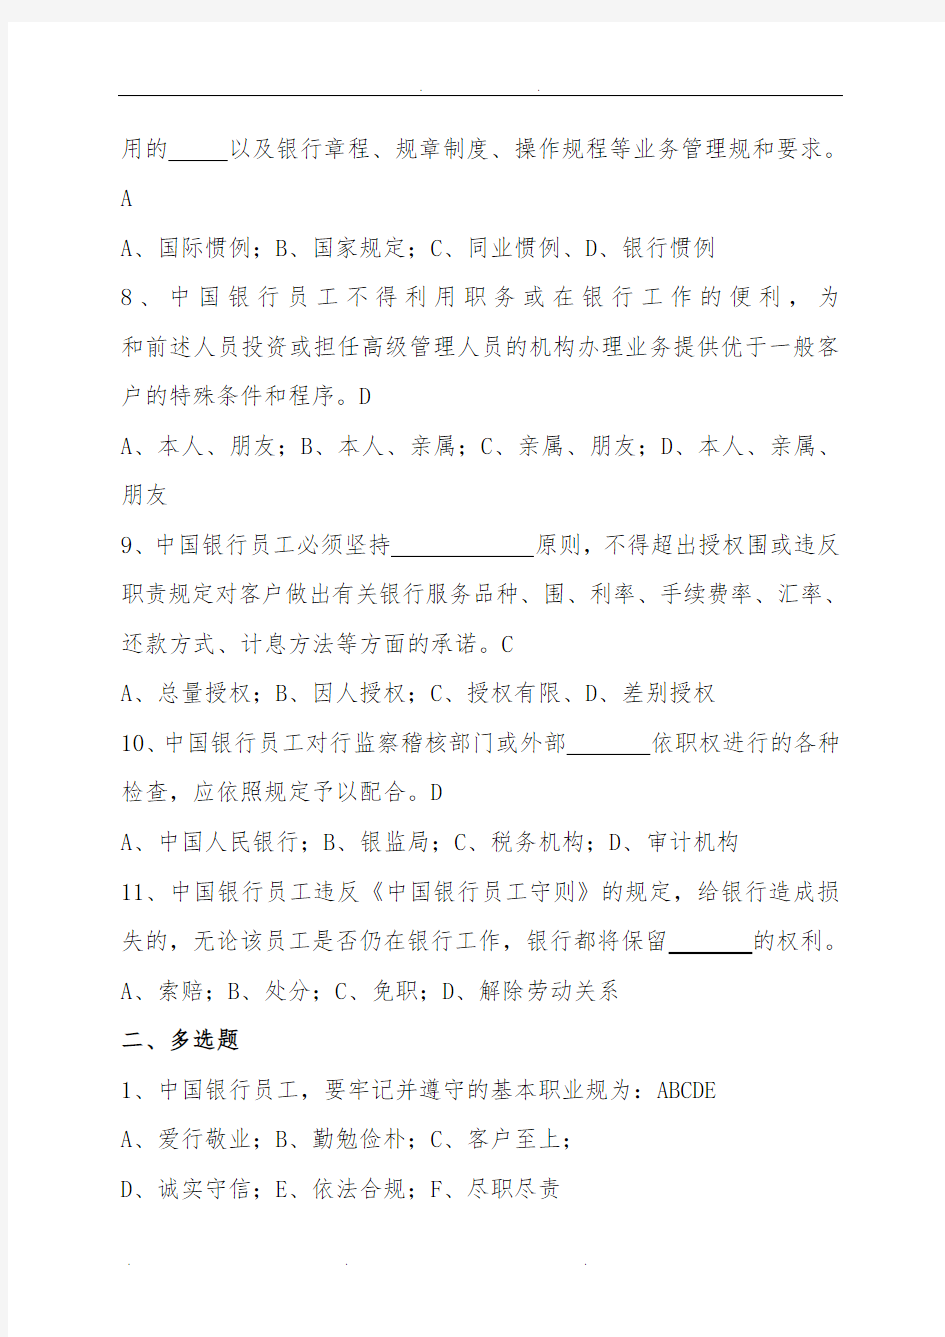 中国银行公共部分考试题库完整